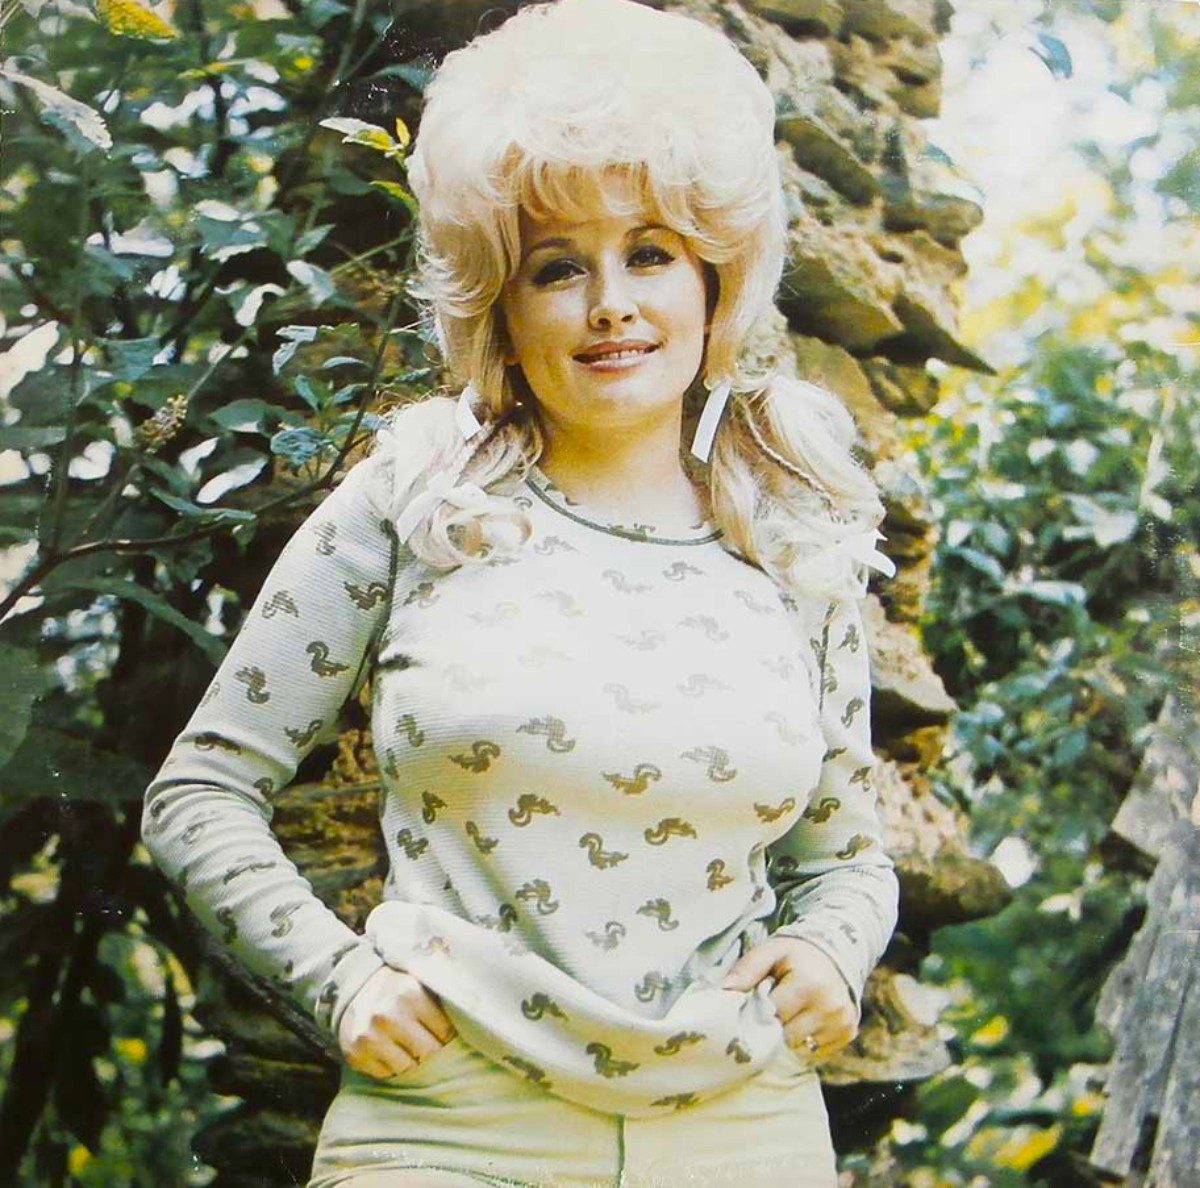 Die junge Dolly Parton